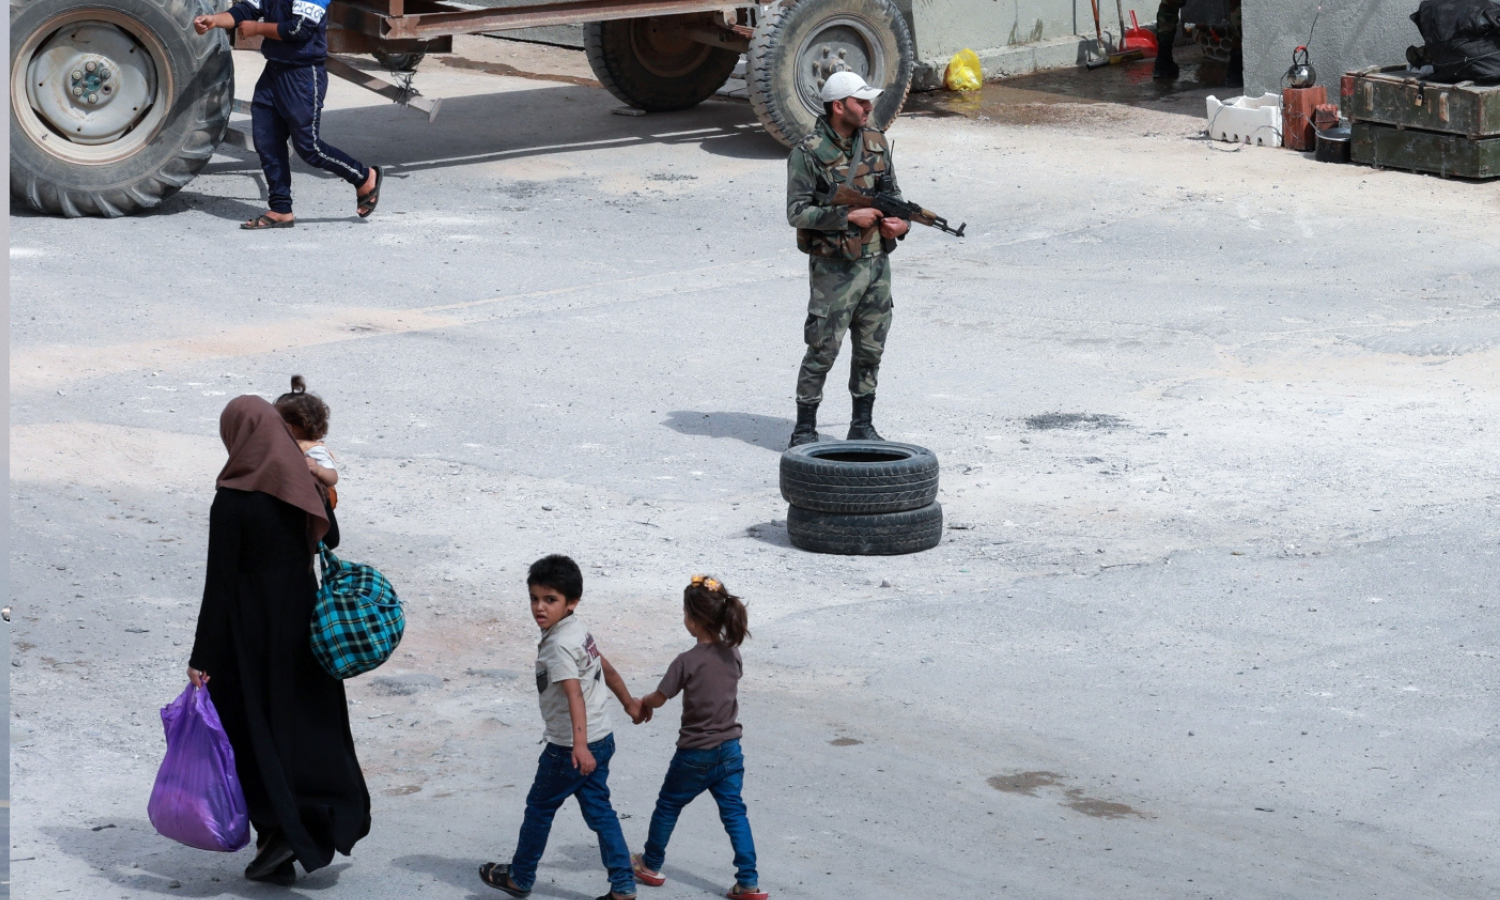 صورة التُقطت خلال جولة نظمتها وزارة الإعلام في حكومة النظام السوري، تظهر أشخاصًا يمشون أمام جنود من جيش النظام السوري عند حاجز في مديرية درعا البلد في 12 من أيلول 2021 بعد أن رفع الحصار الذي استمر شهرين ونصف الشهر- (AFP)